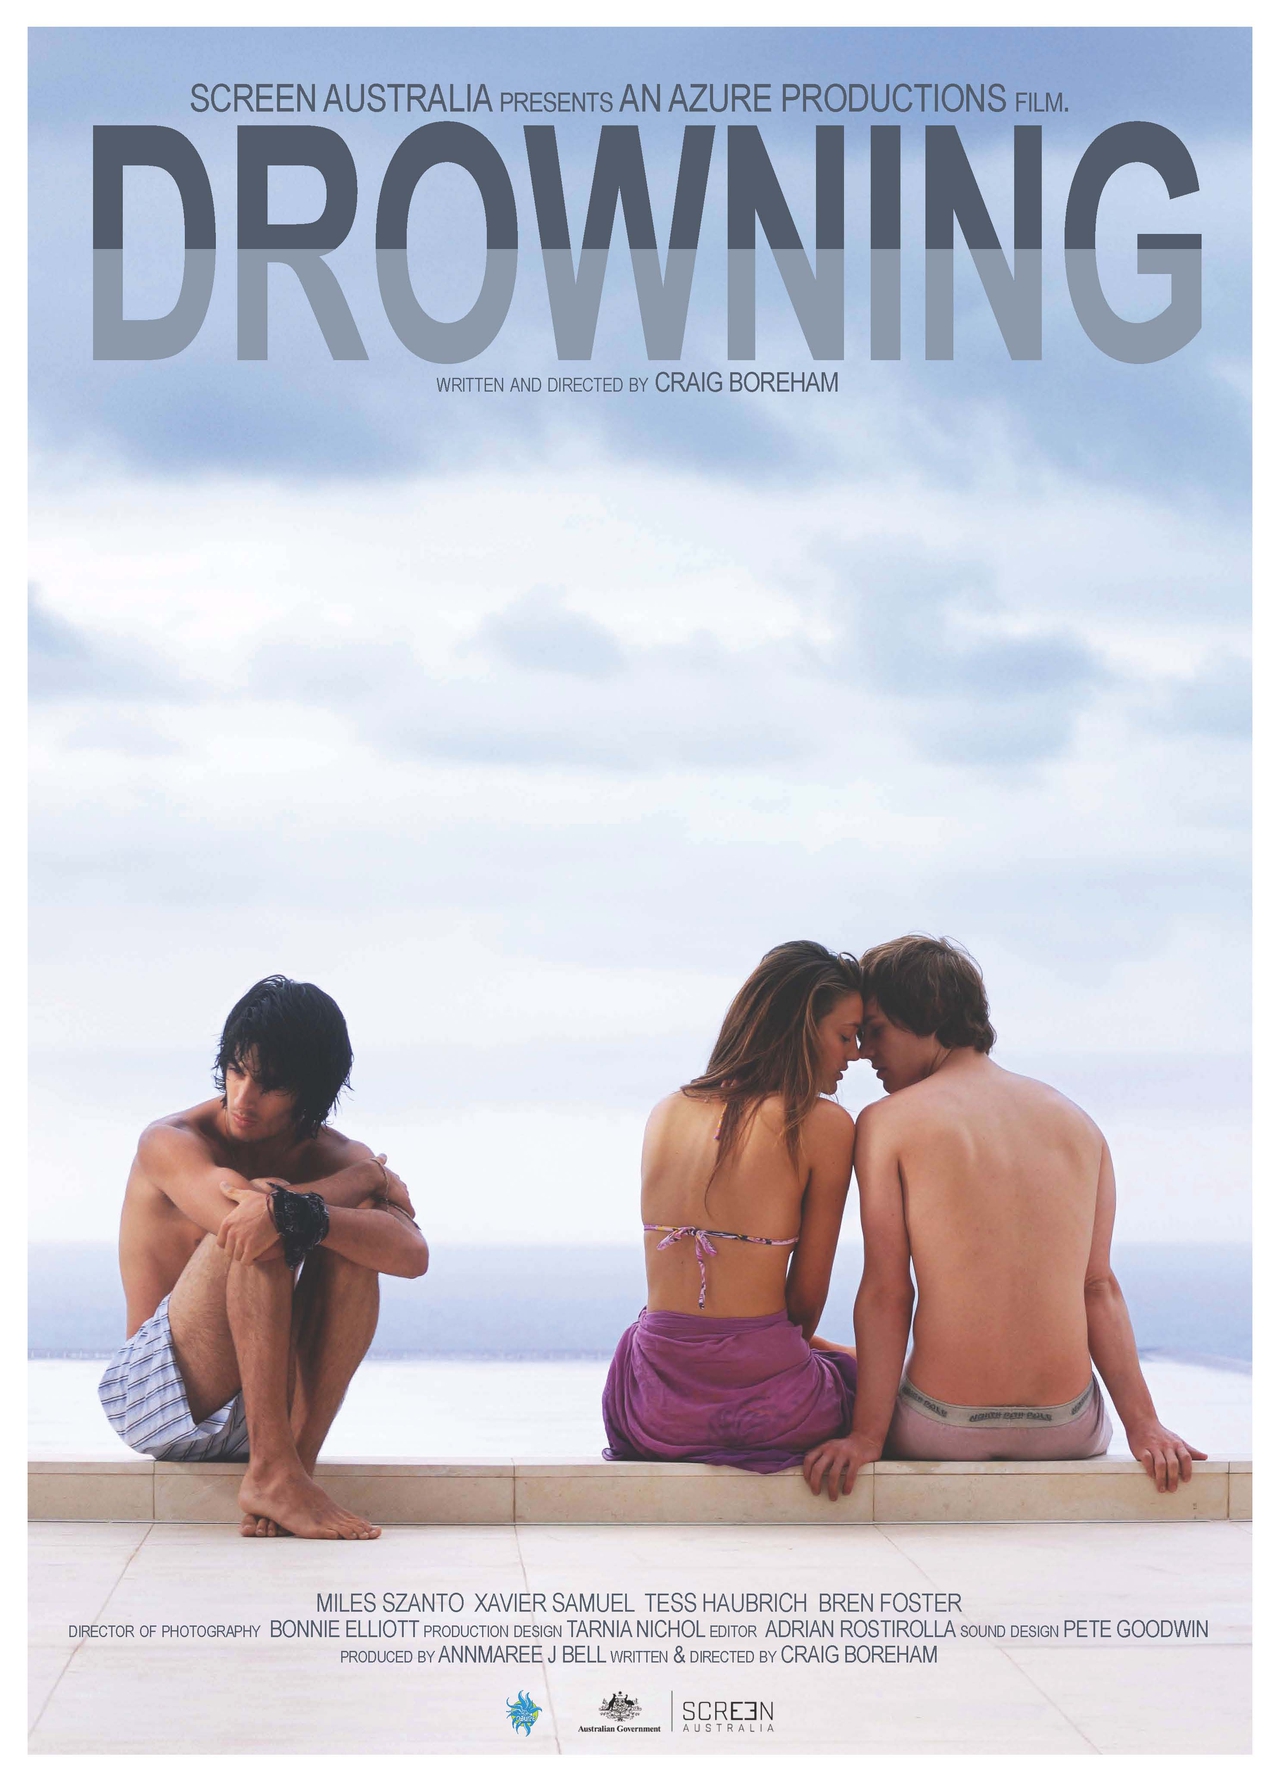  فیلم سینمایی Drowning با حضور ژاویر ساموئل، Tess Haubrich و Miles Szanto